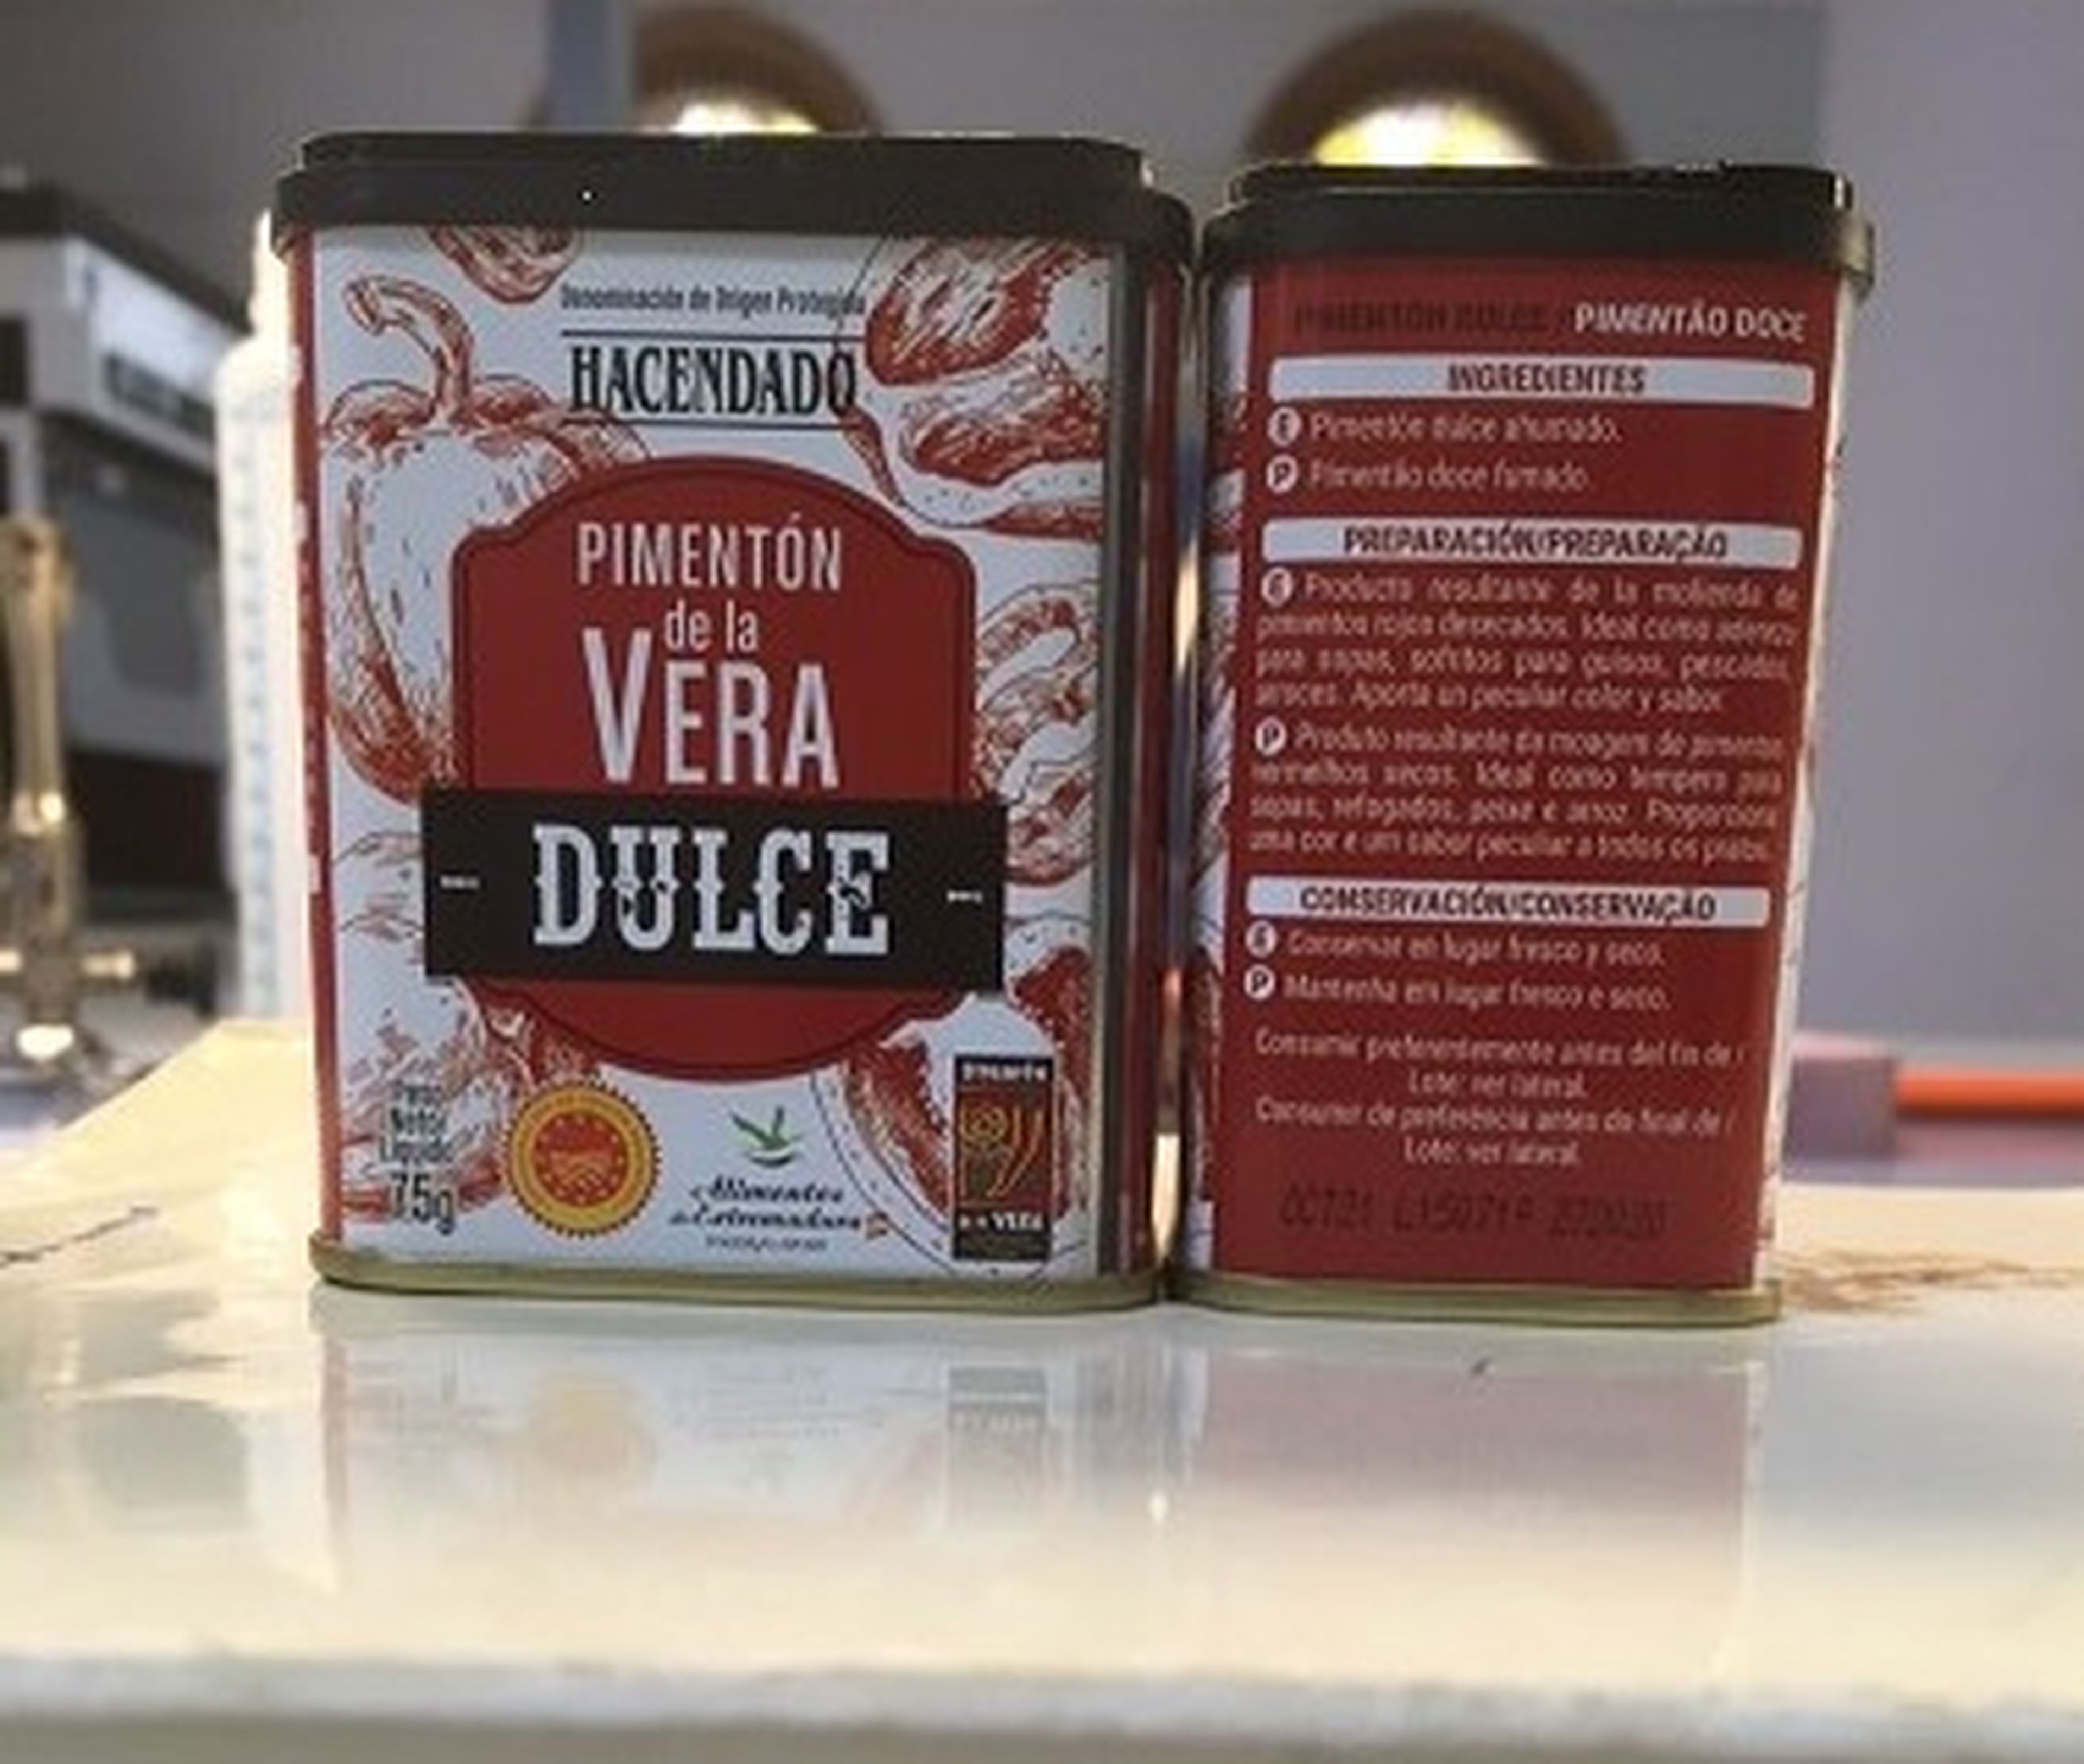 Producto de Pimentón de la Vera Dulce Hacendado con Lote L150719 retirado por Mercadona por alerta de Salmonella.